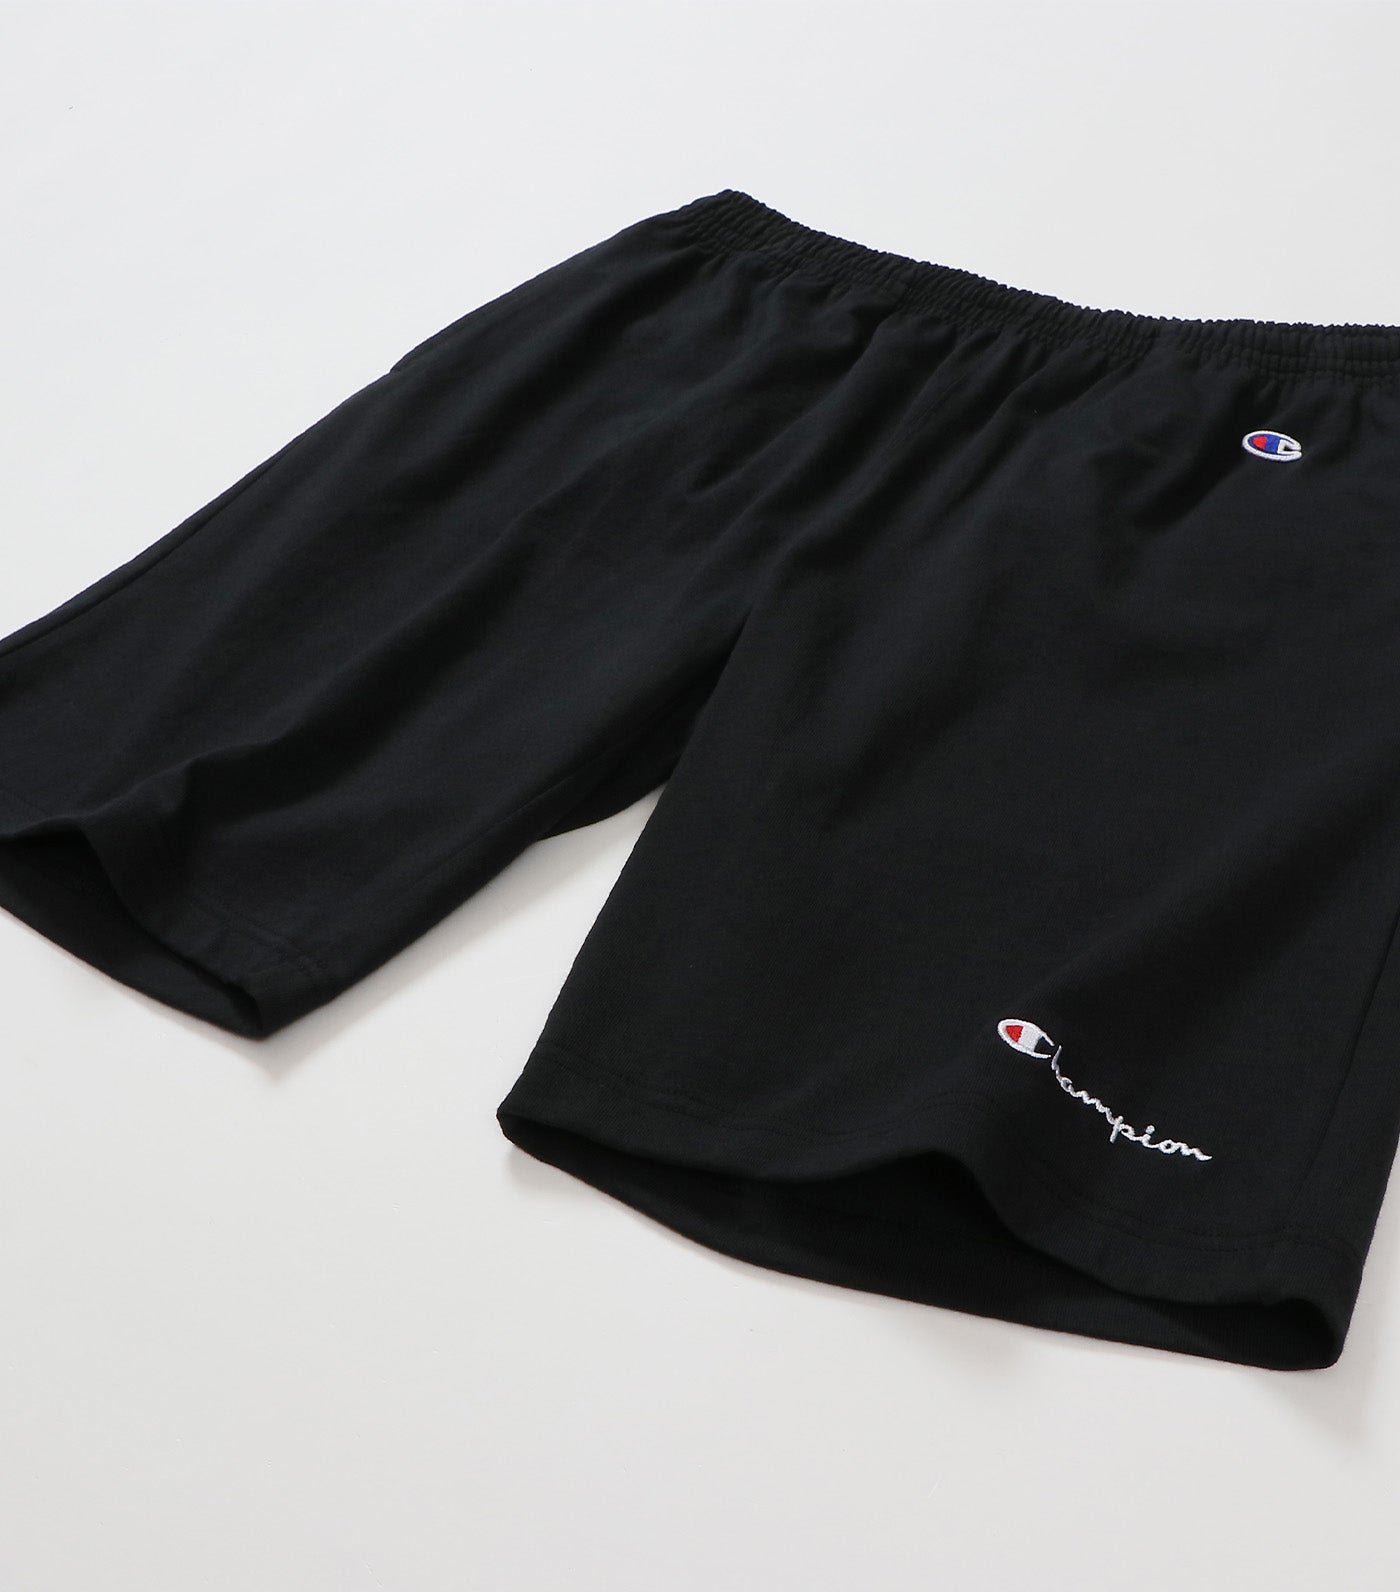 Japan Line Shorts Black